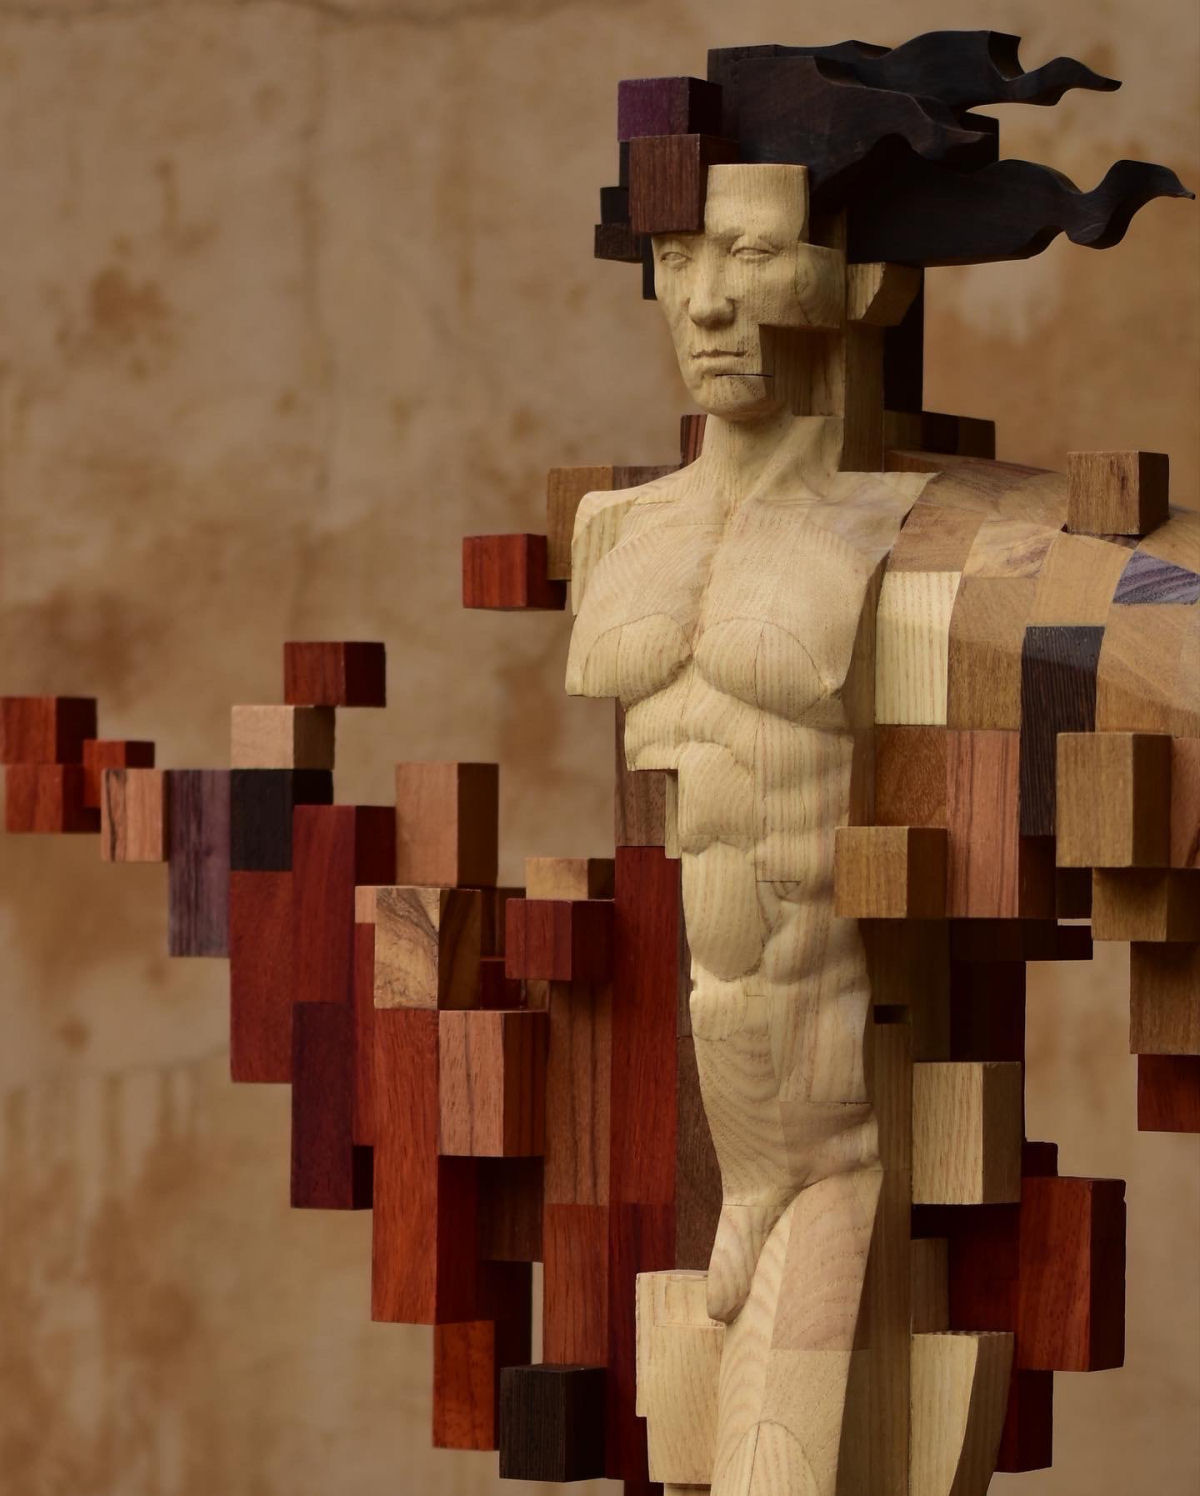 Esculturas figurativas parecem se fragmentar com pixels de madeira 08